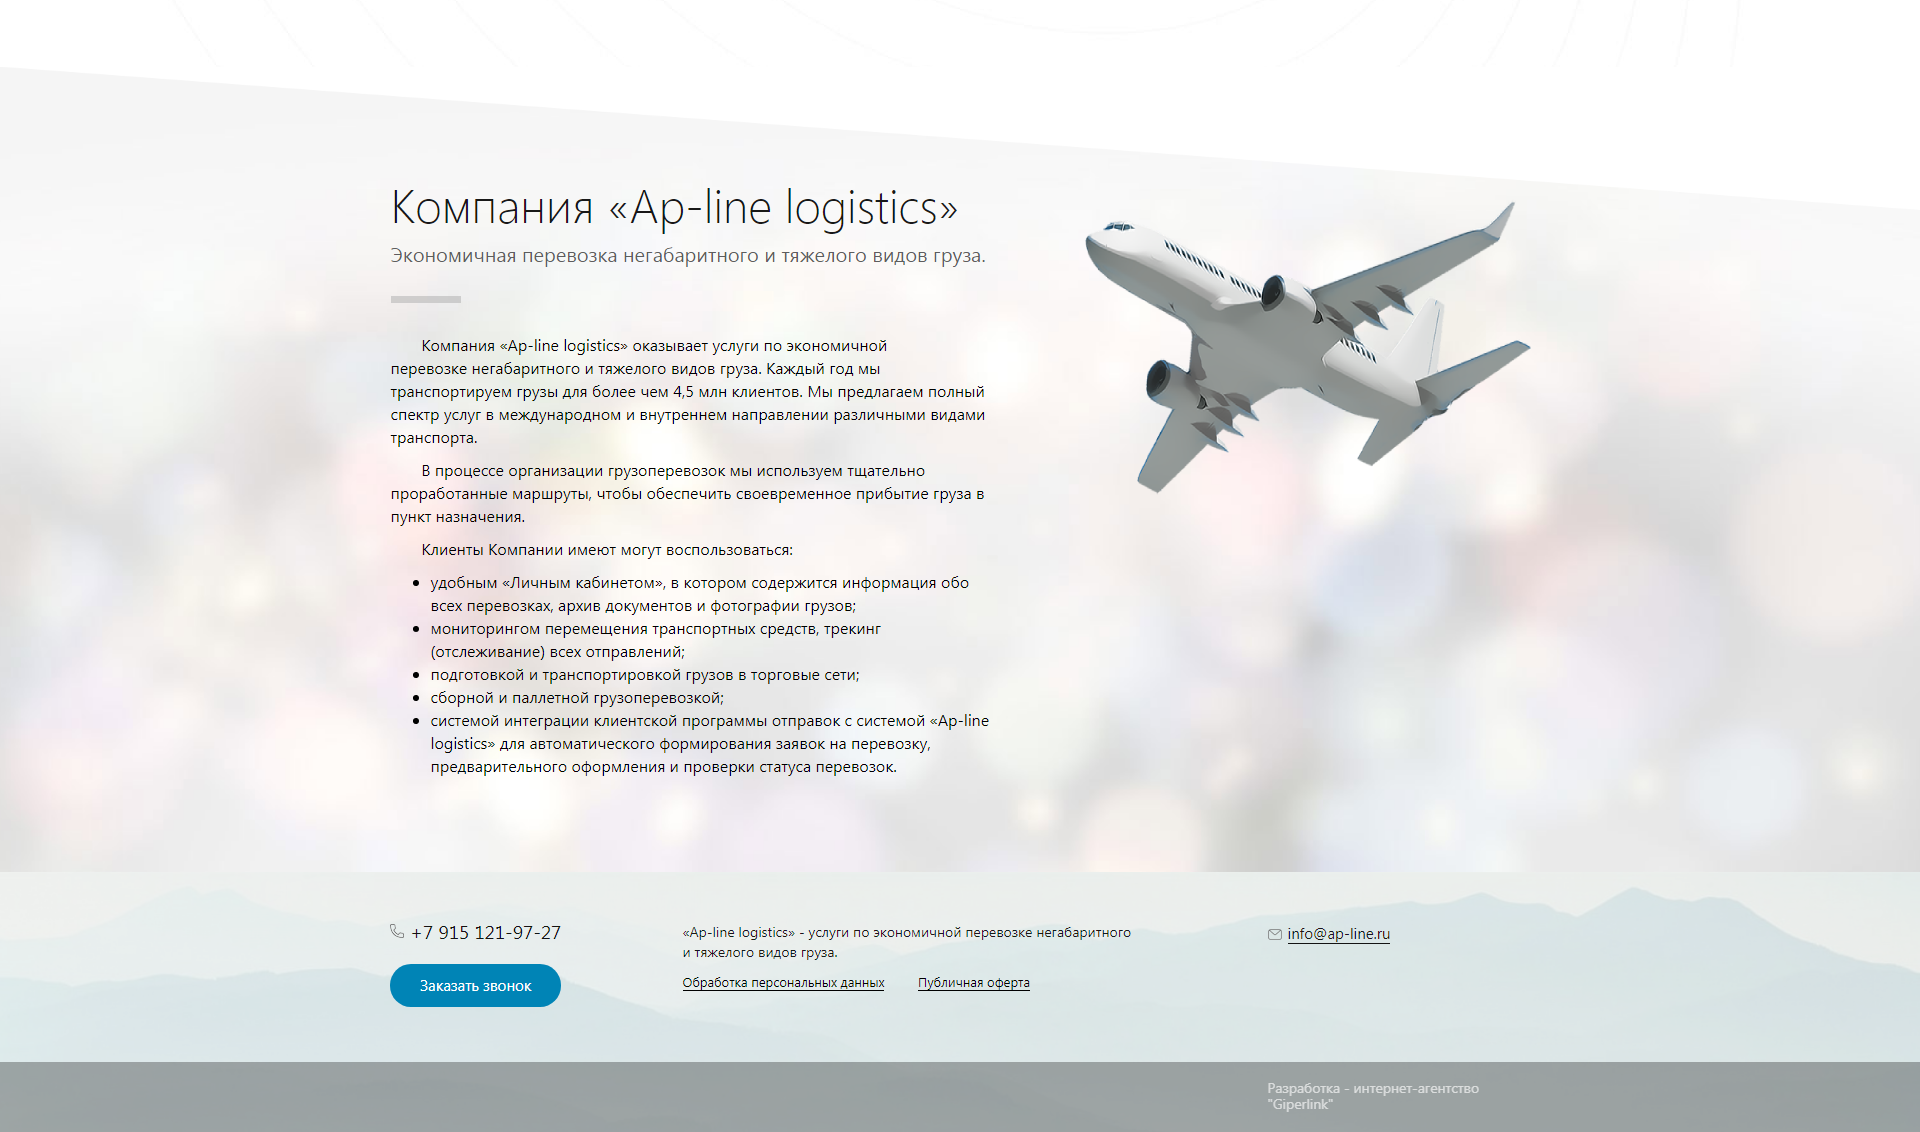 трехъязычный сайт логистической компании "ap-line logistics".